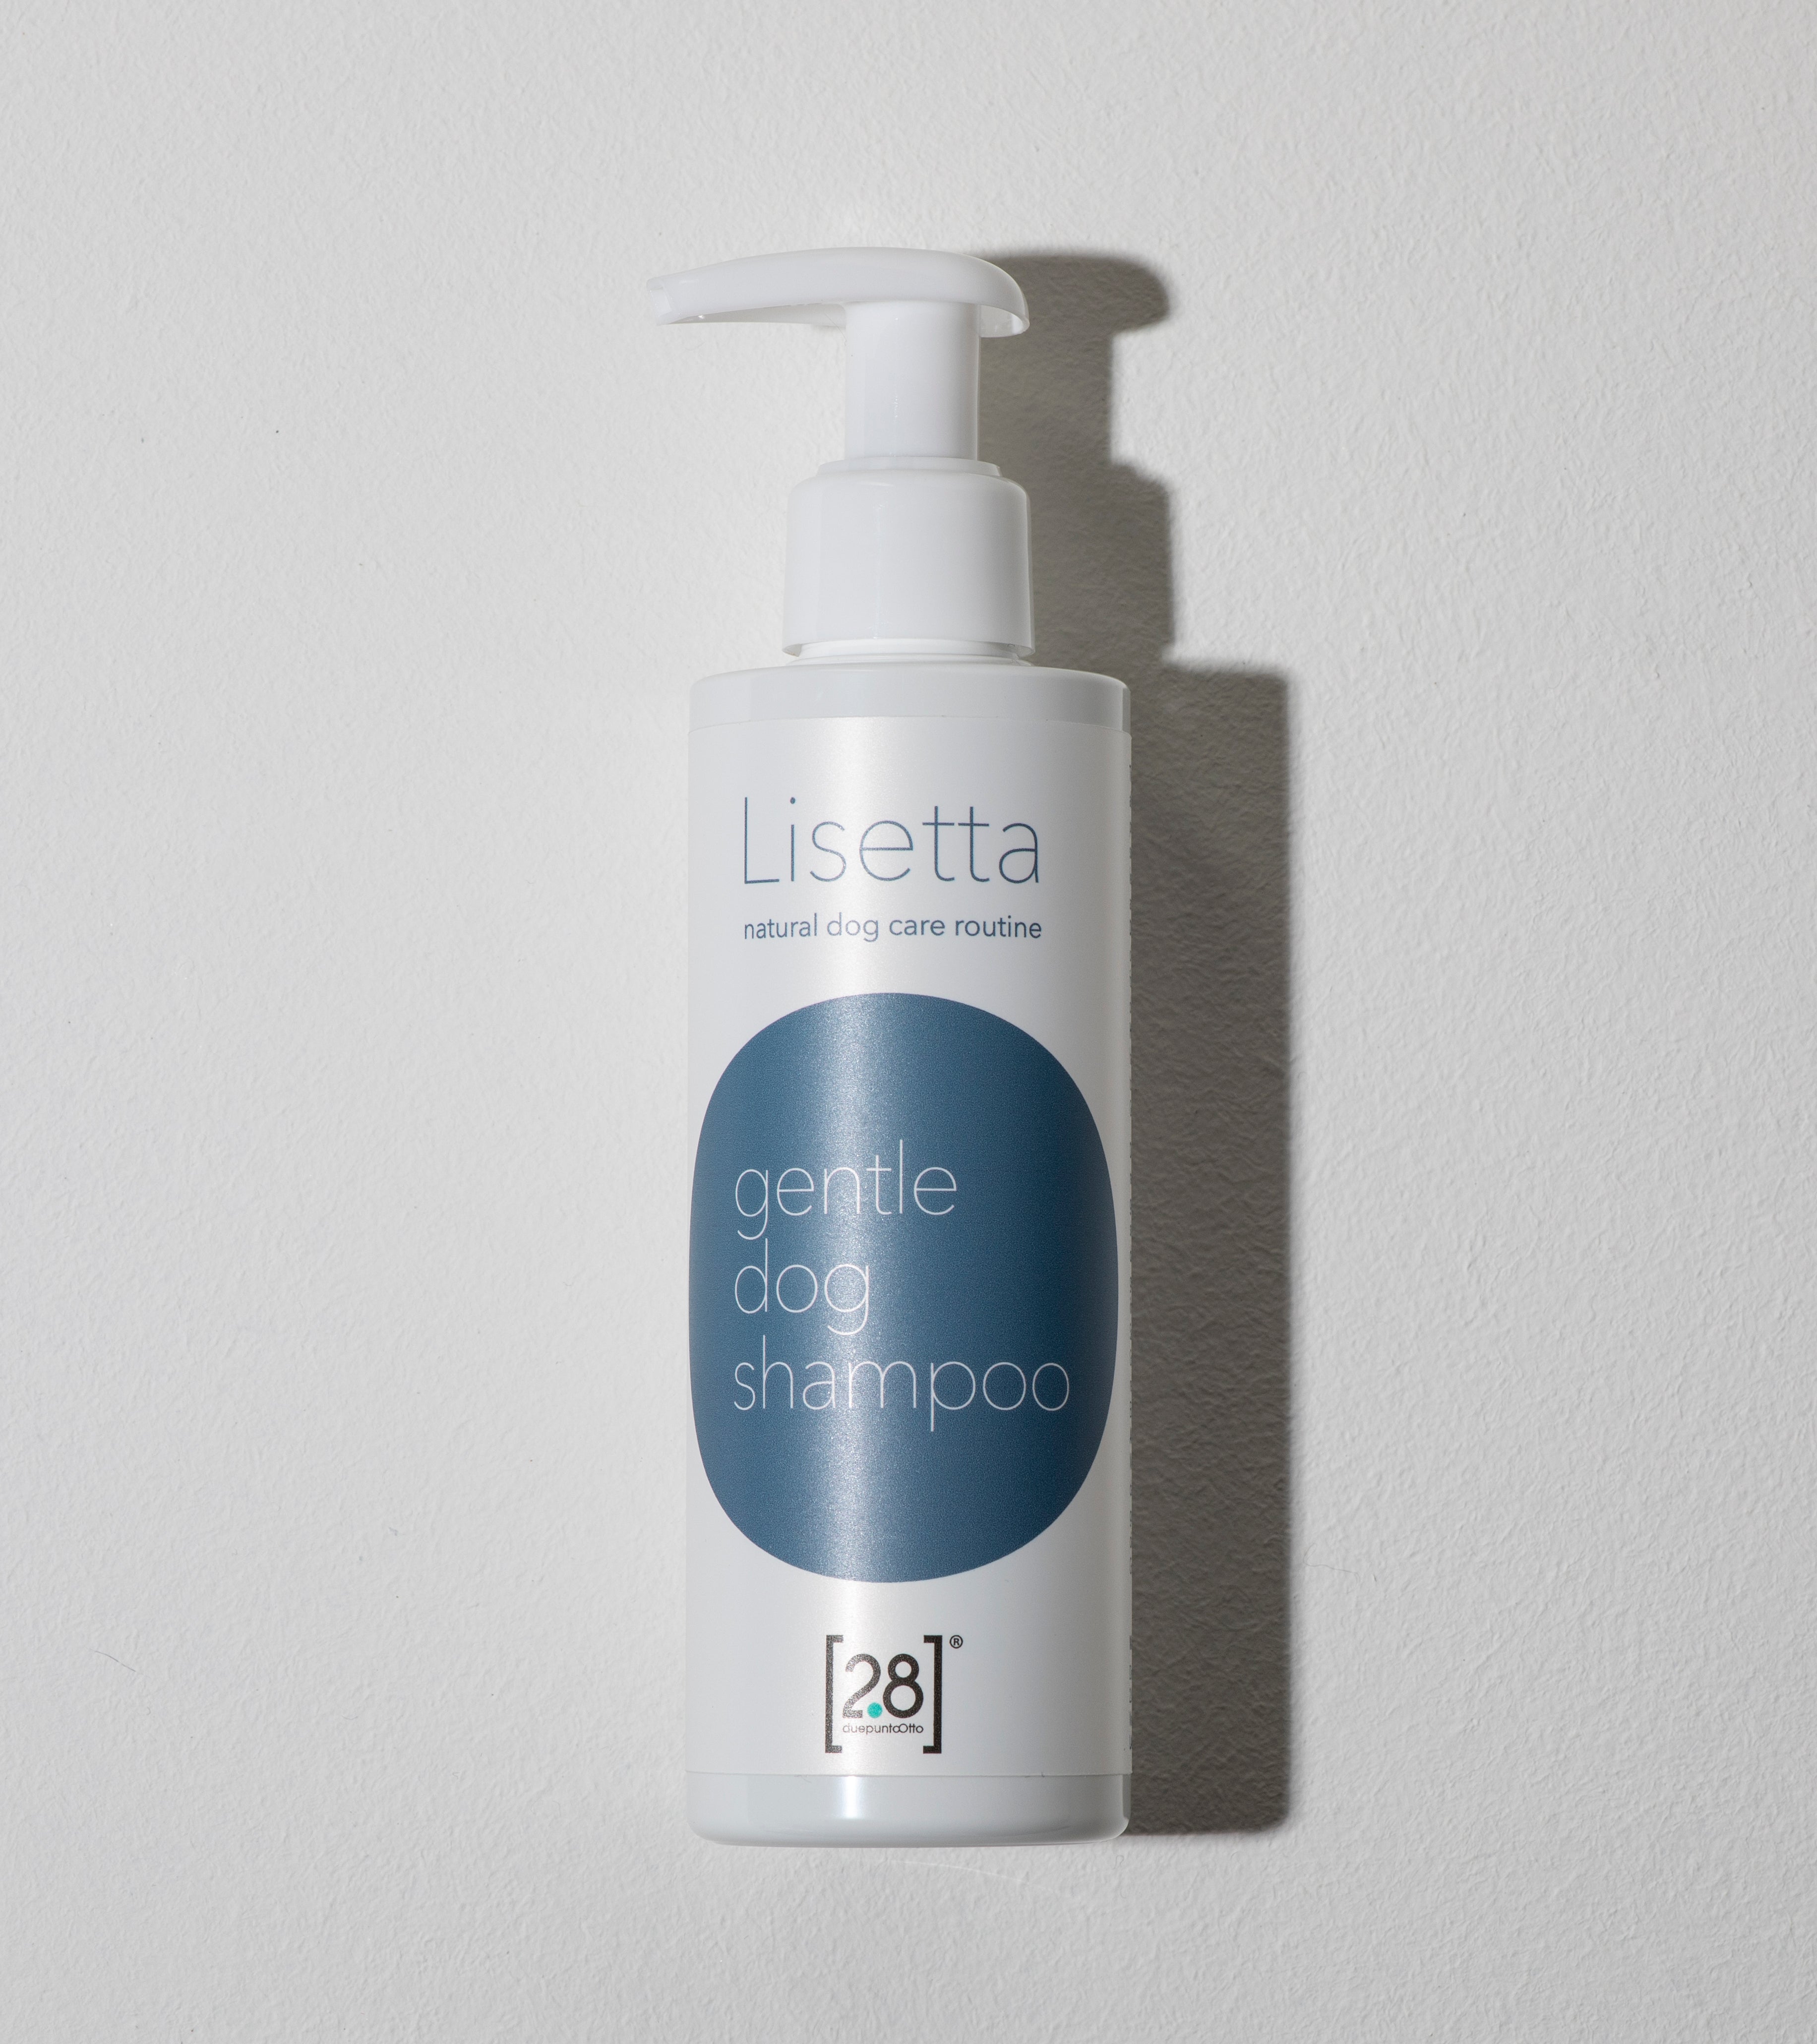 lisetta-natural-dog-shampoo_0b0438a8-4b59-4b1b-b4a8-ea83c6d85525.jpg